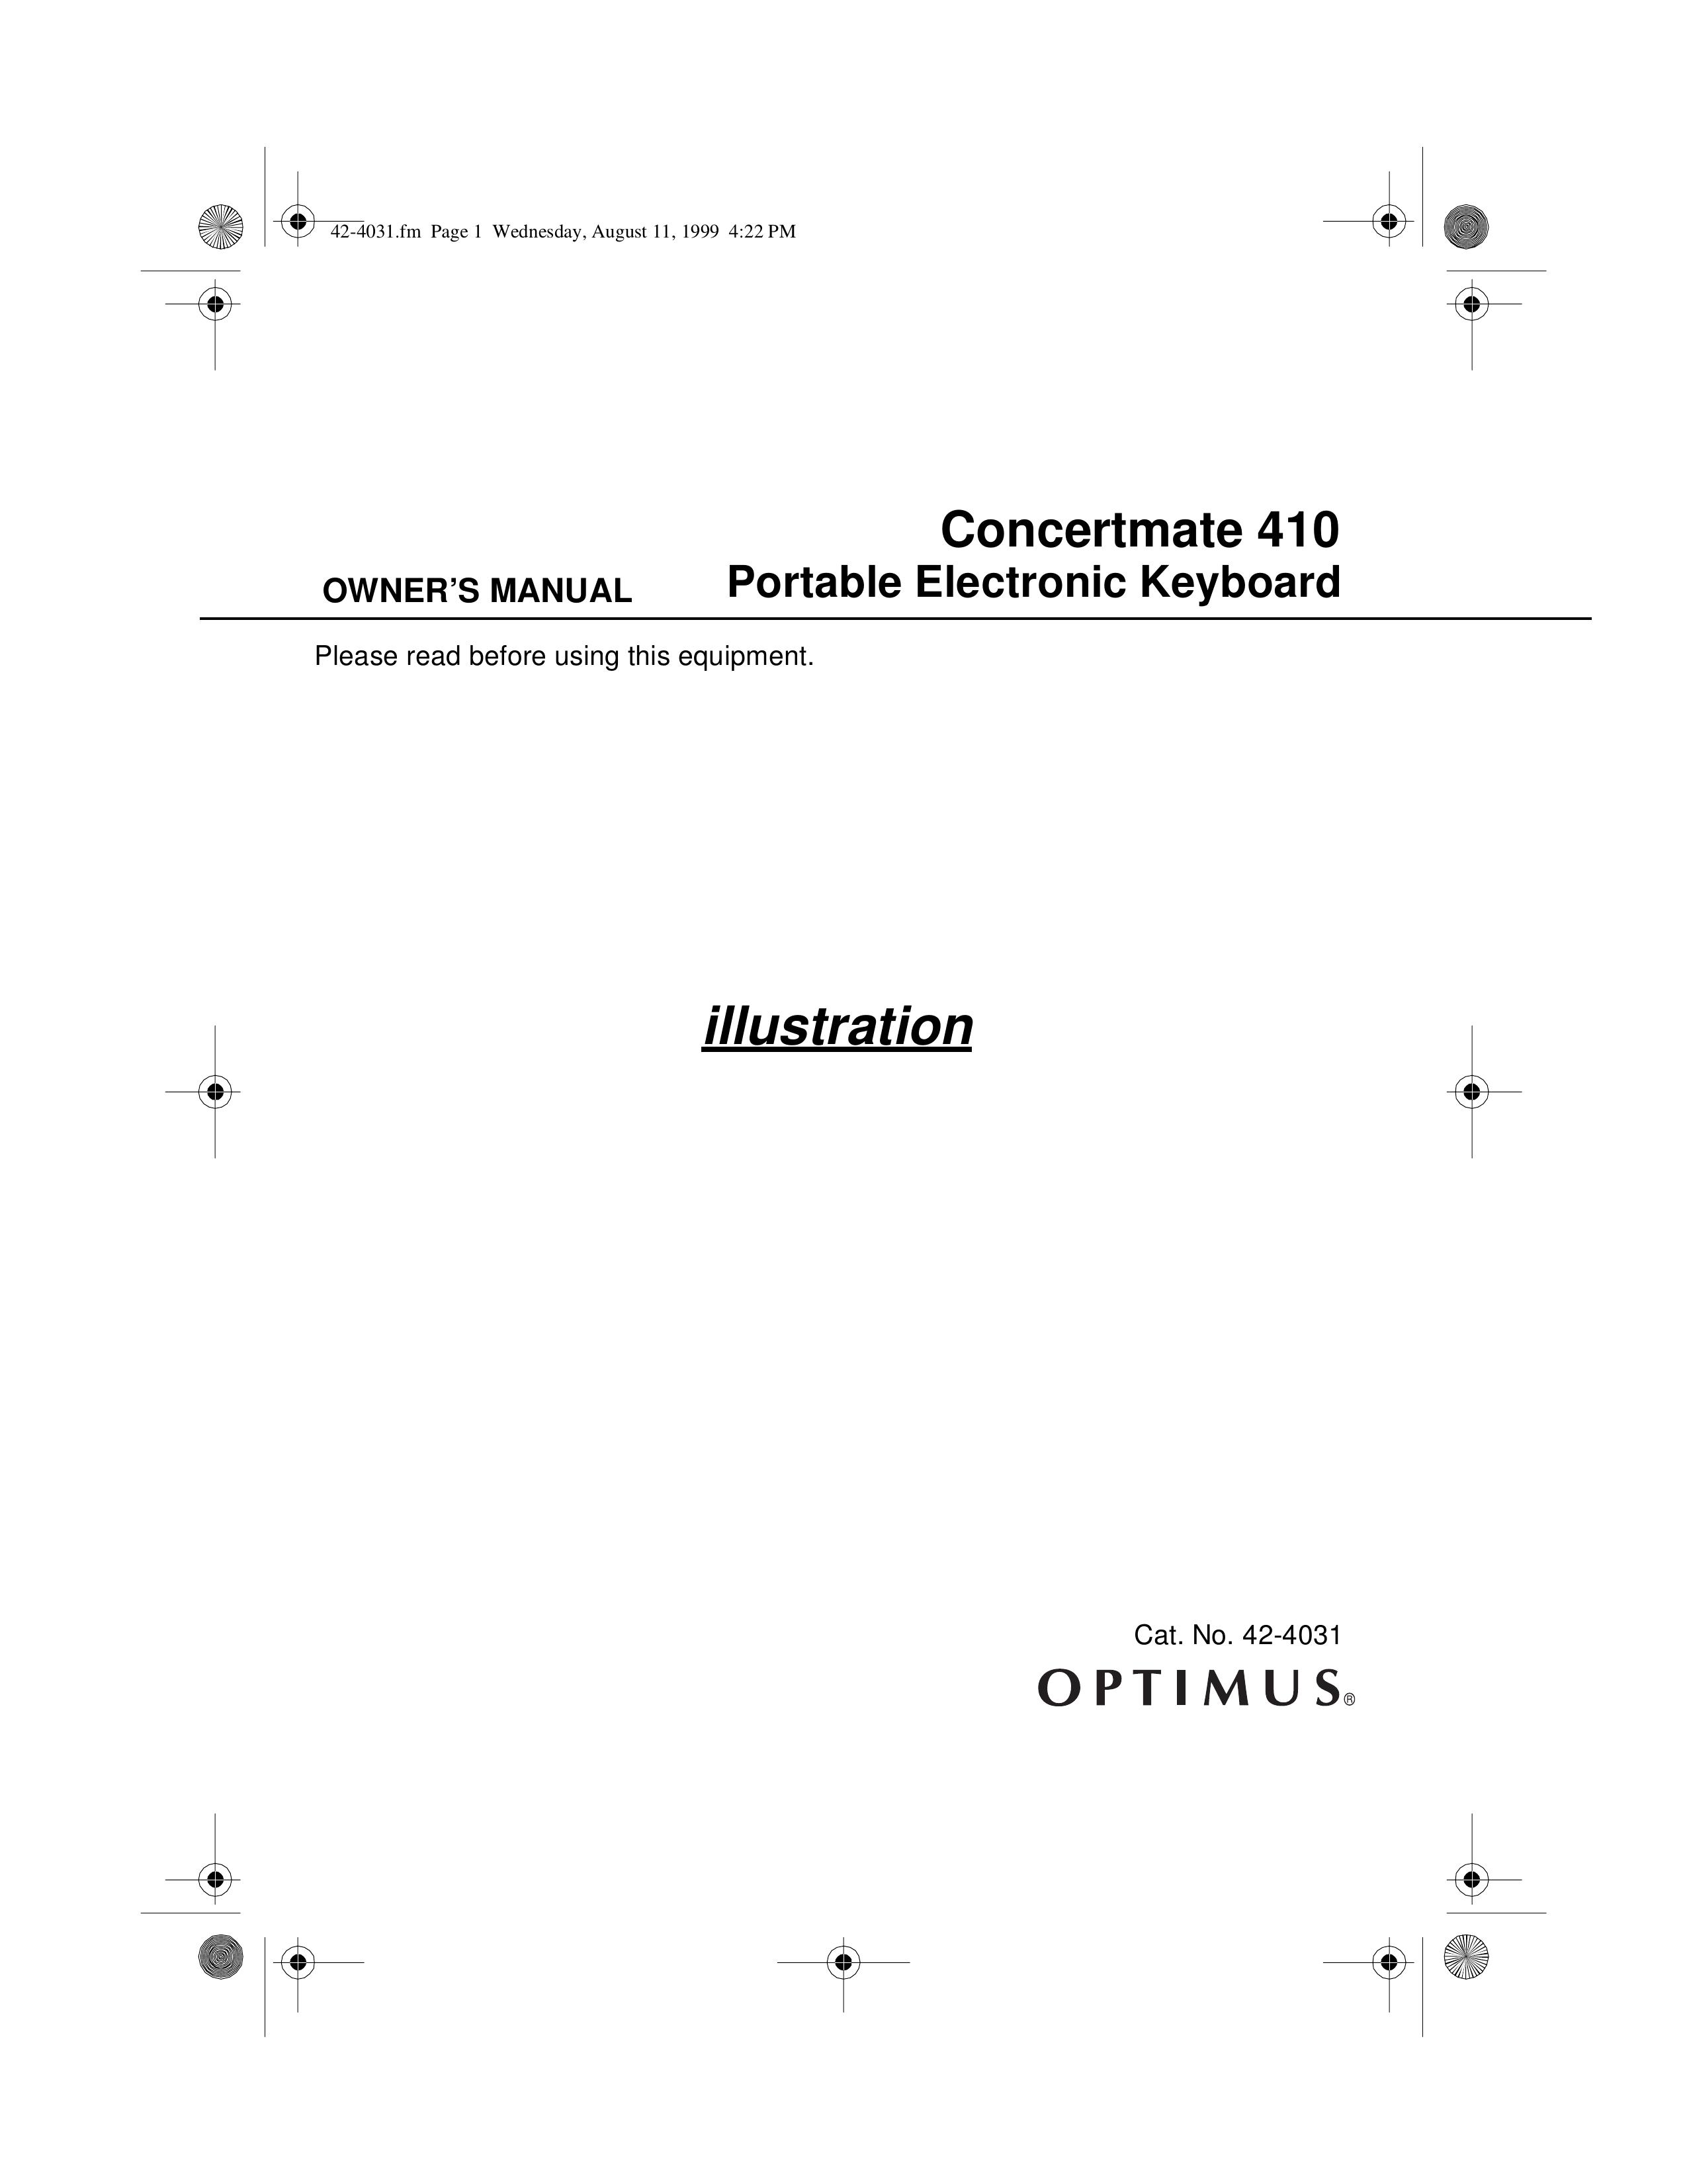 Optimus 42-4031 Electronic Keyboard User Manual